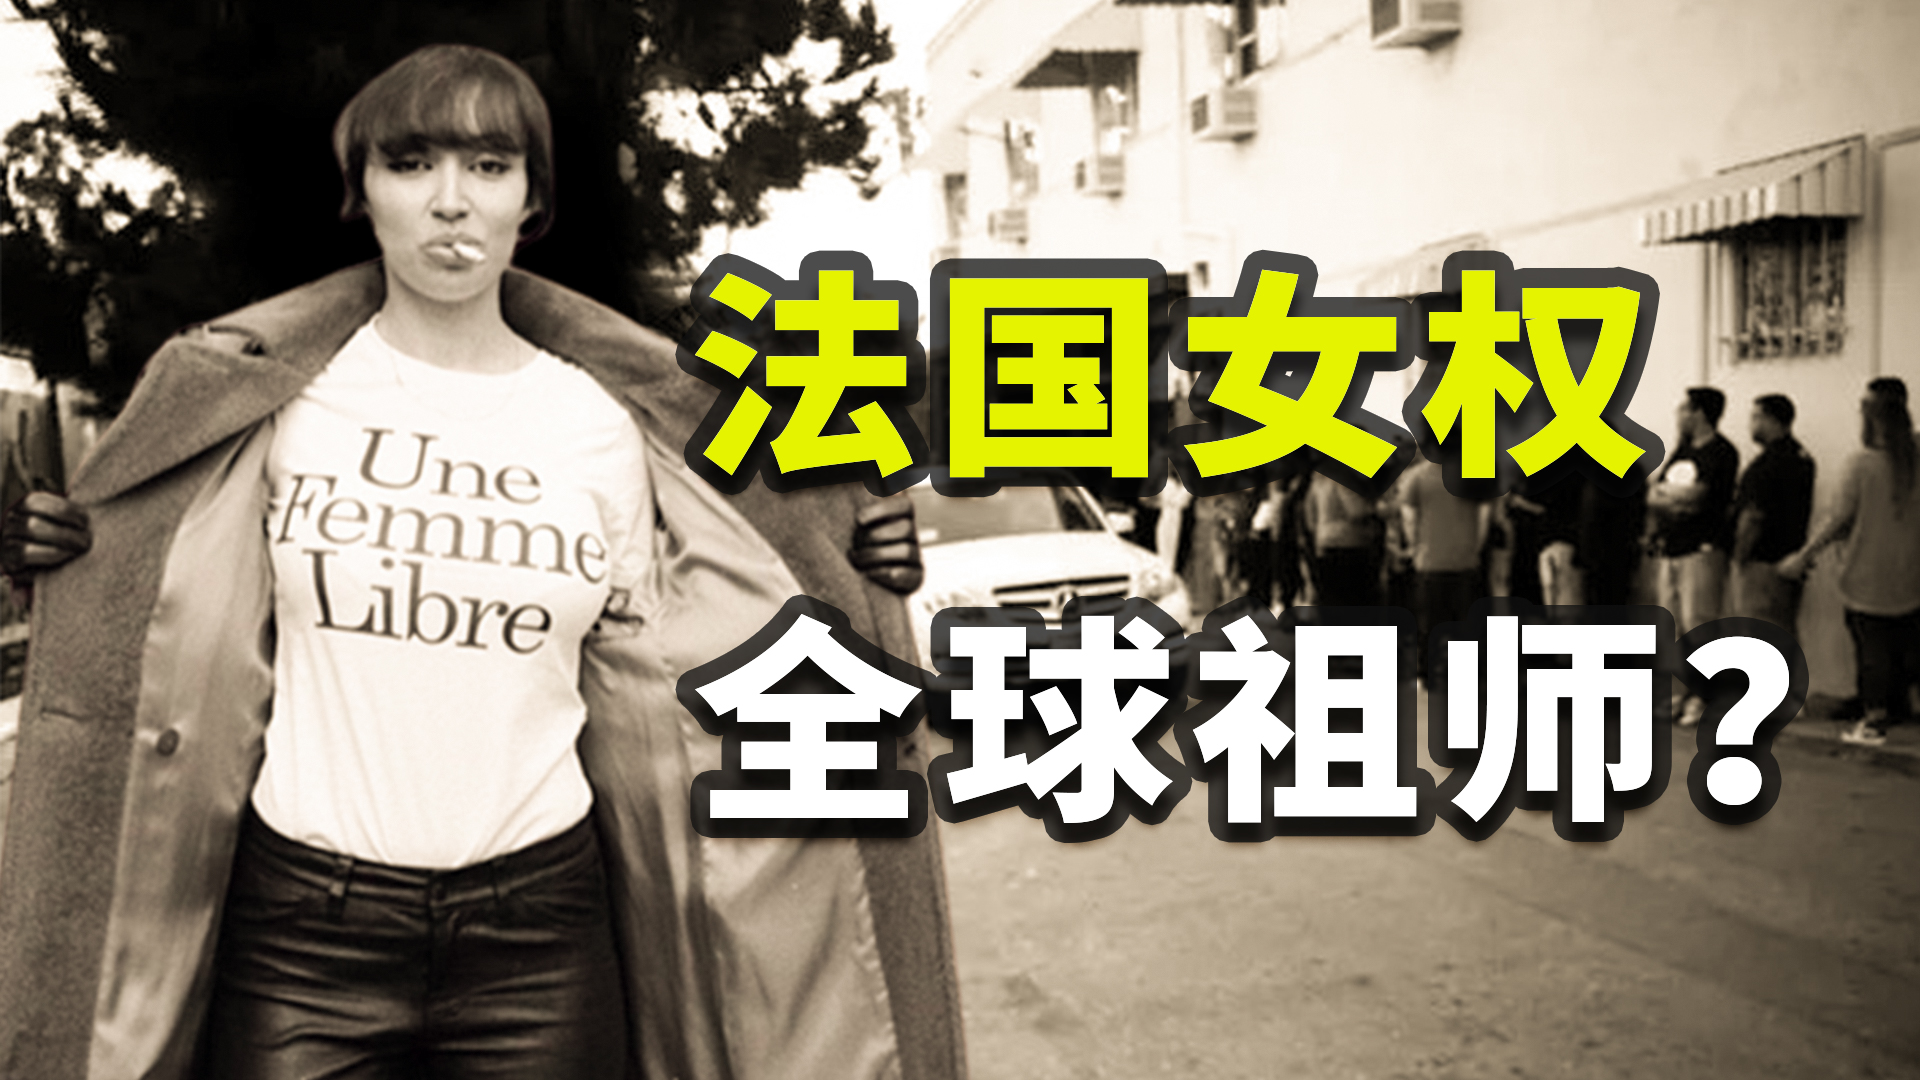 美大学邀请黄之锋罗冠聪座谈 中国留学生场内外抗议：“港独”死路！